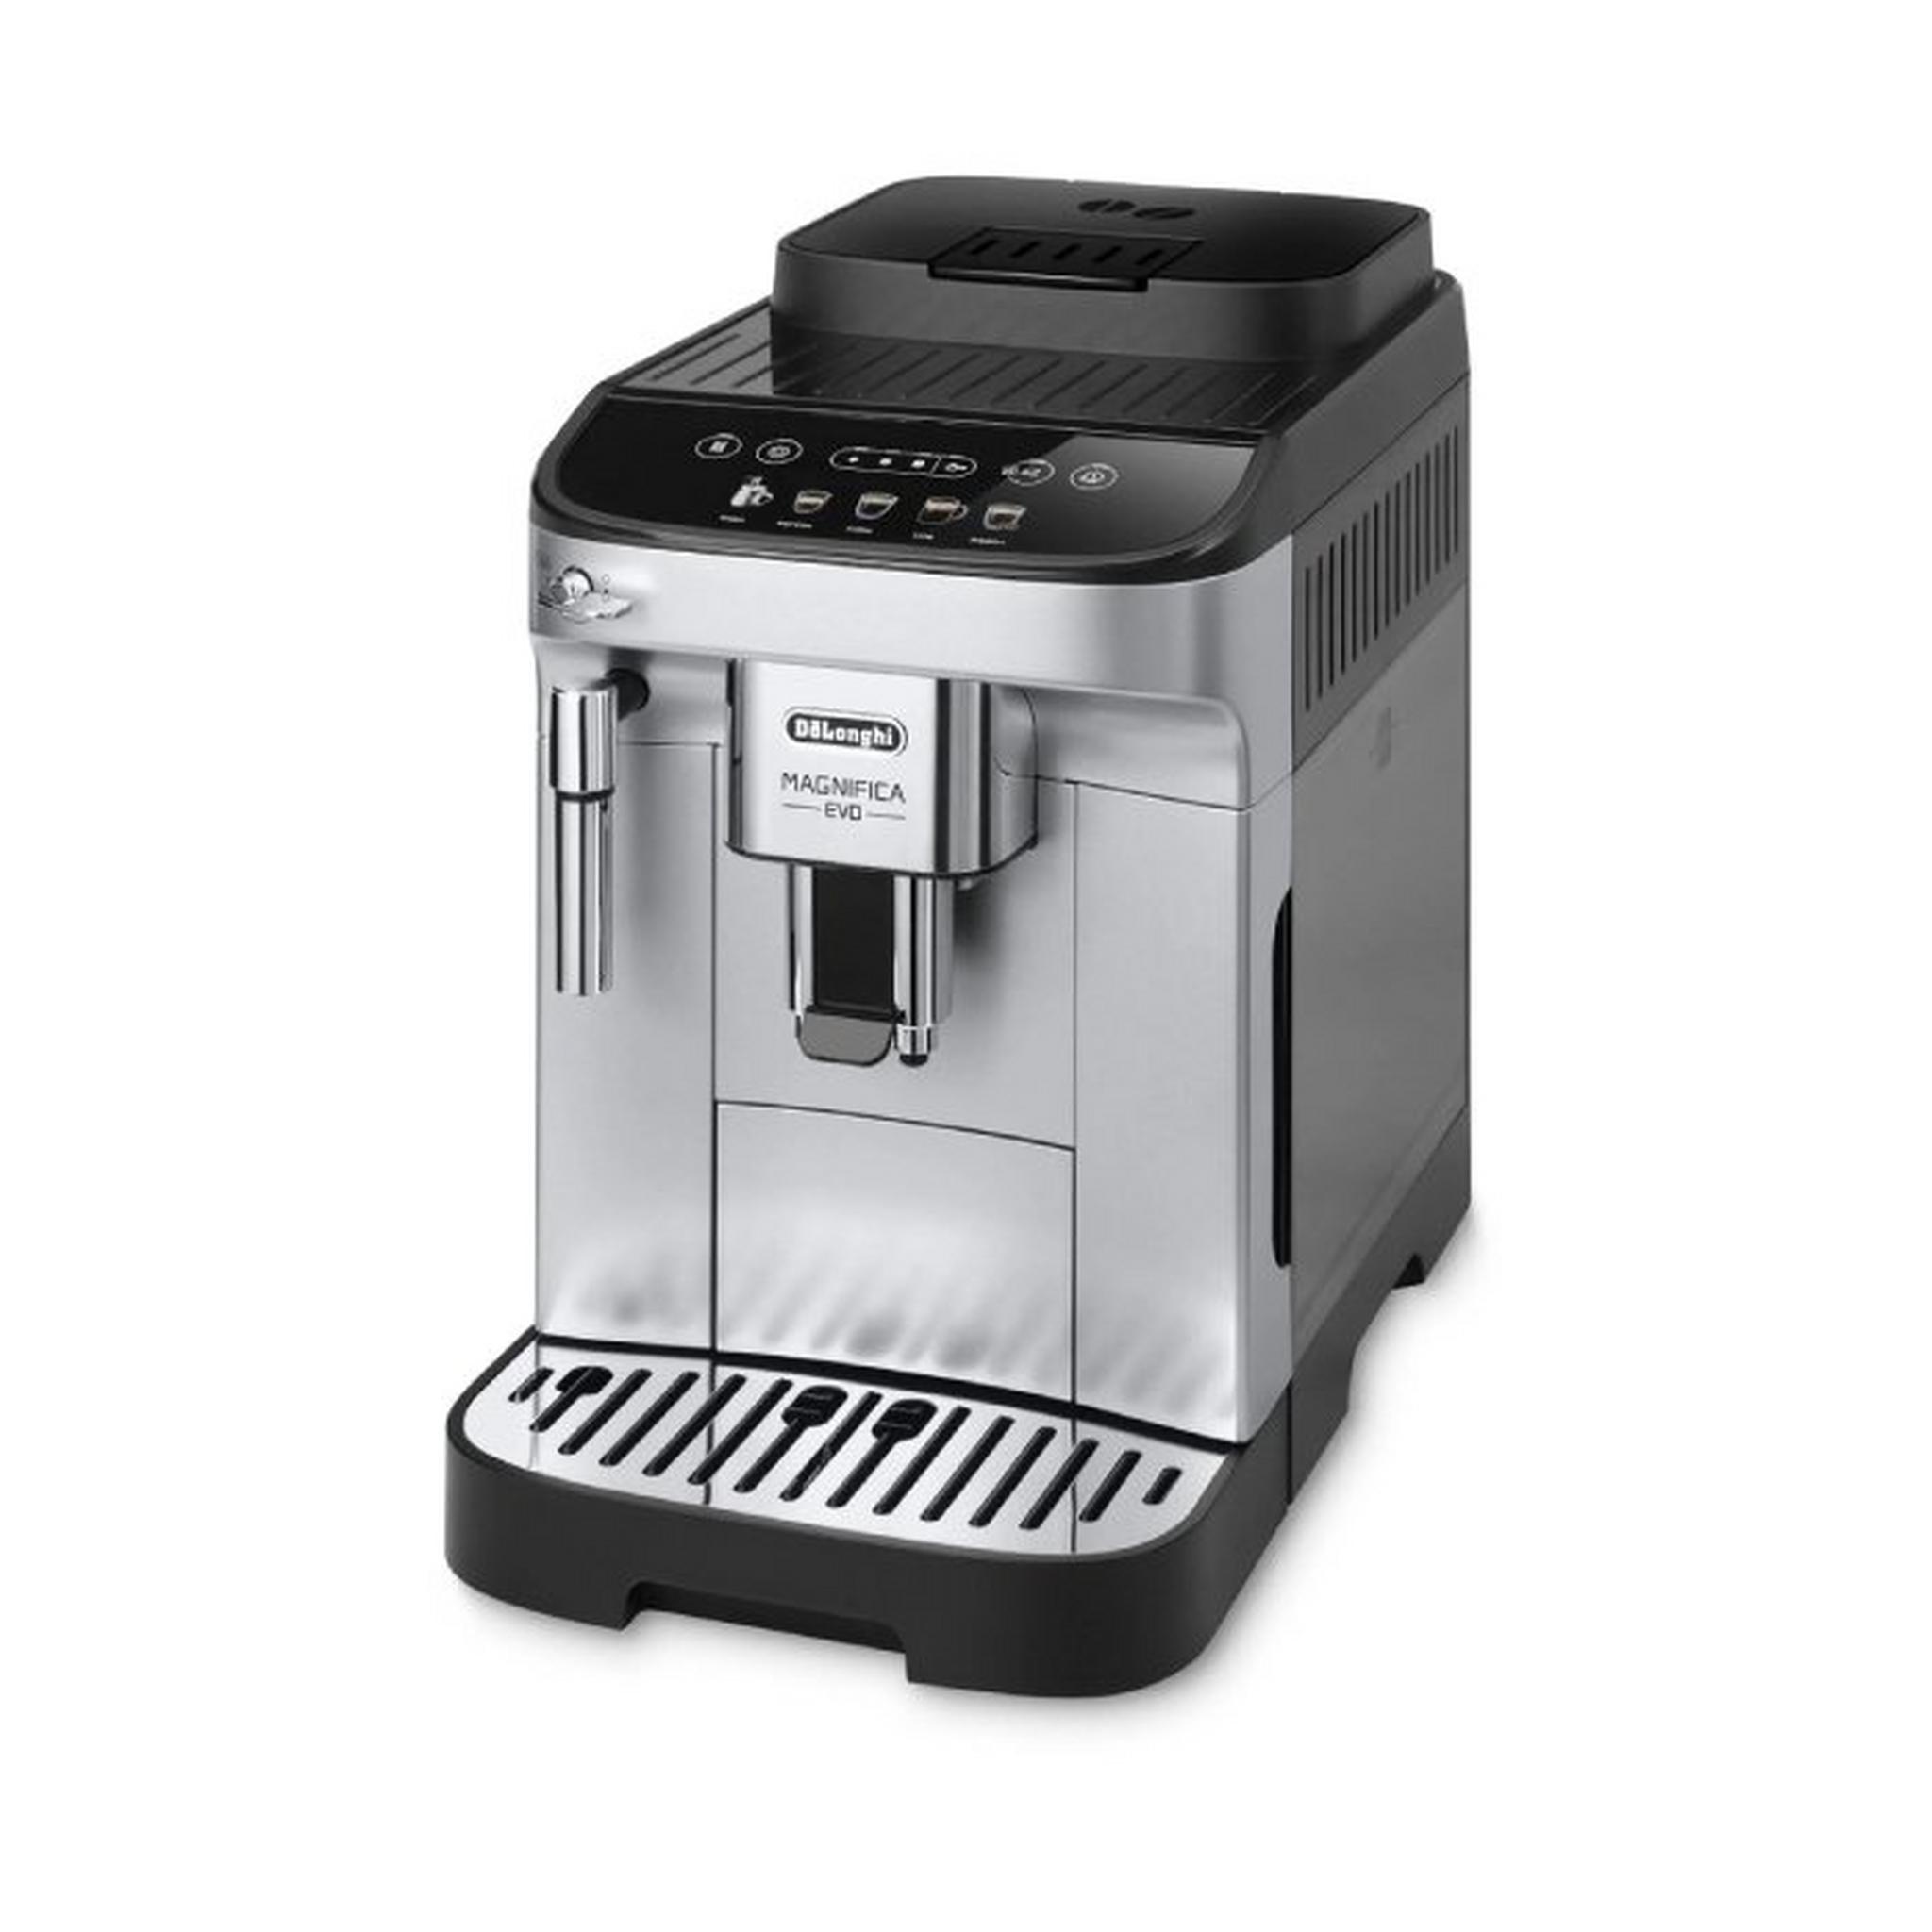 Delonghi Automatic Coffee Maker, 1450 W, 1.8L, ECAM290.42.TB - Titanium Black